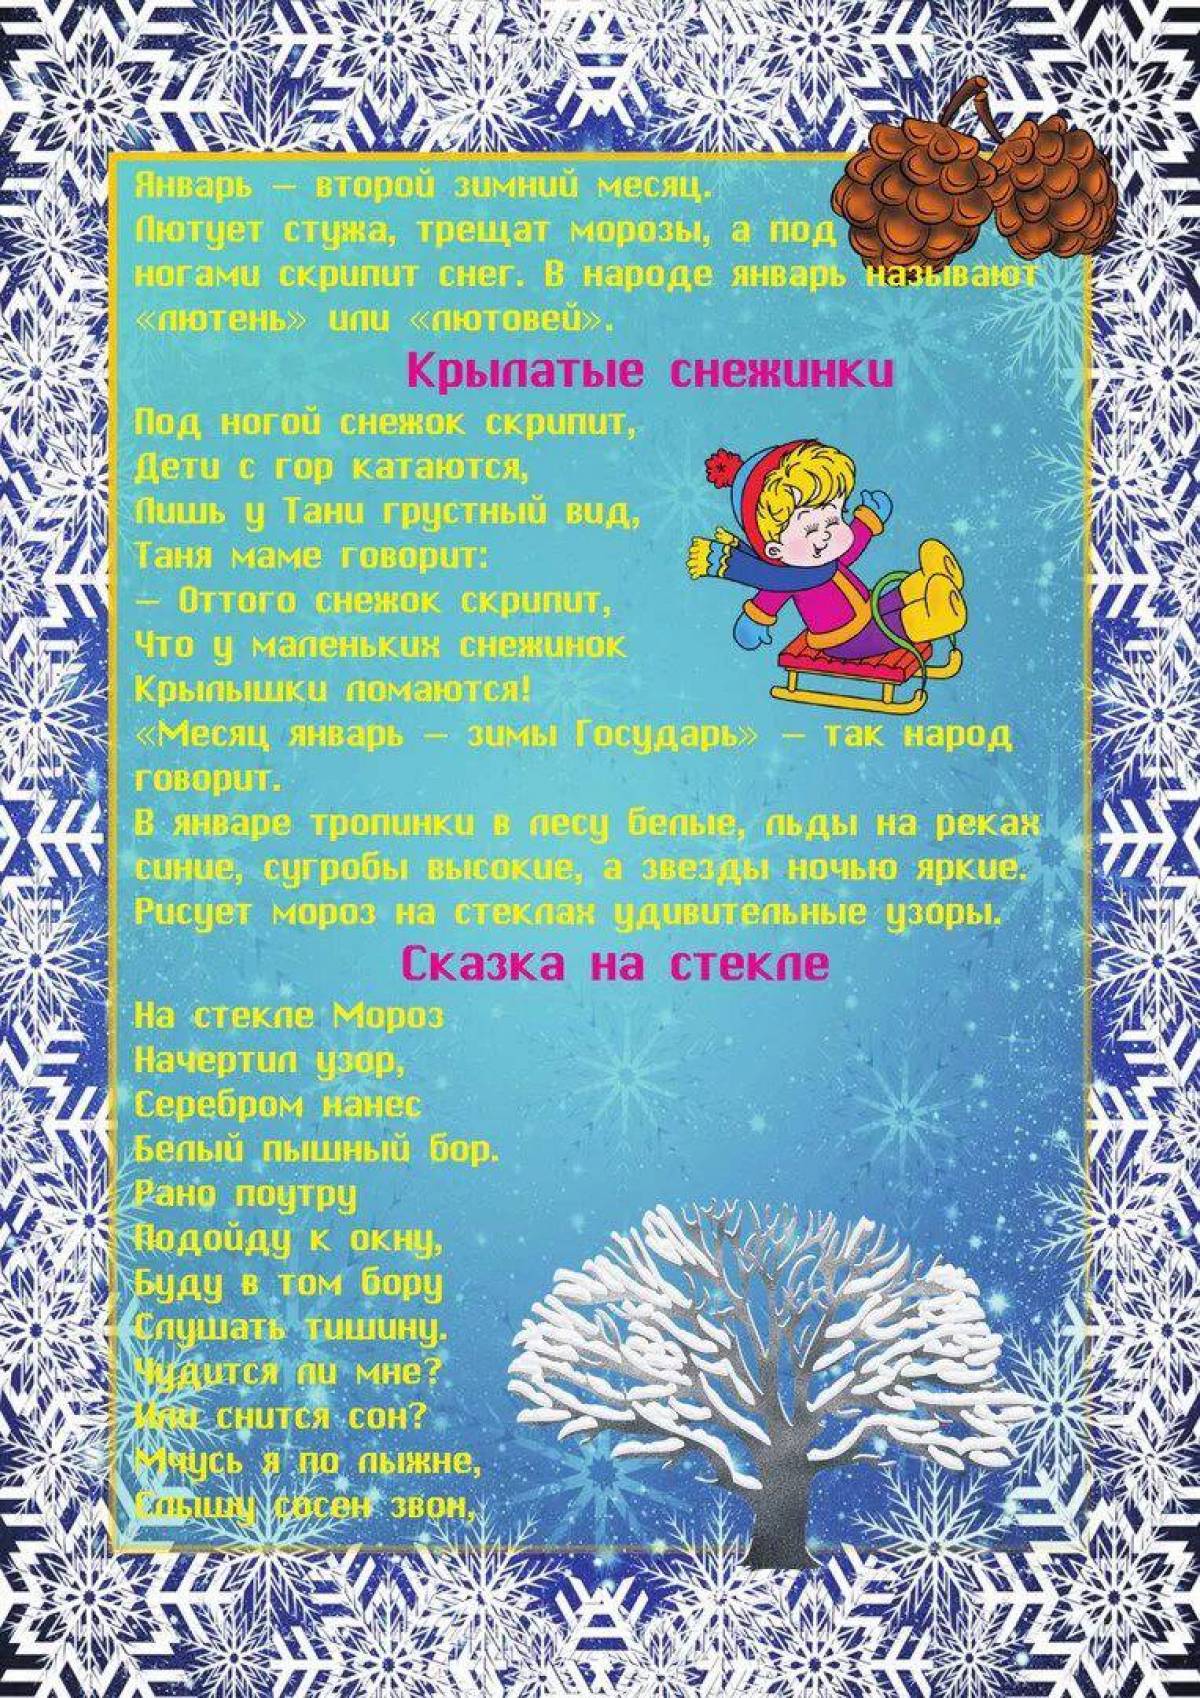 Описание декабря месяца. Зимние месяцы для детей. Зимние месяца для детского сада. Детские стихи про зимние месяцы. Приметы января для детей.